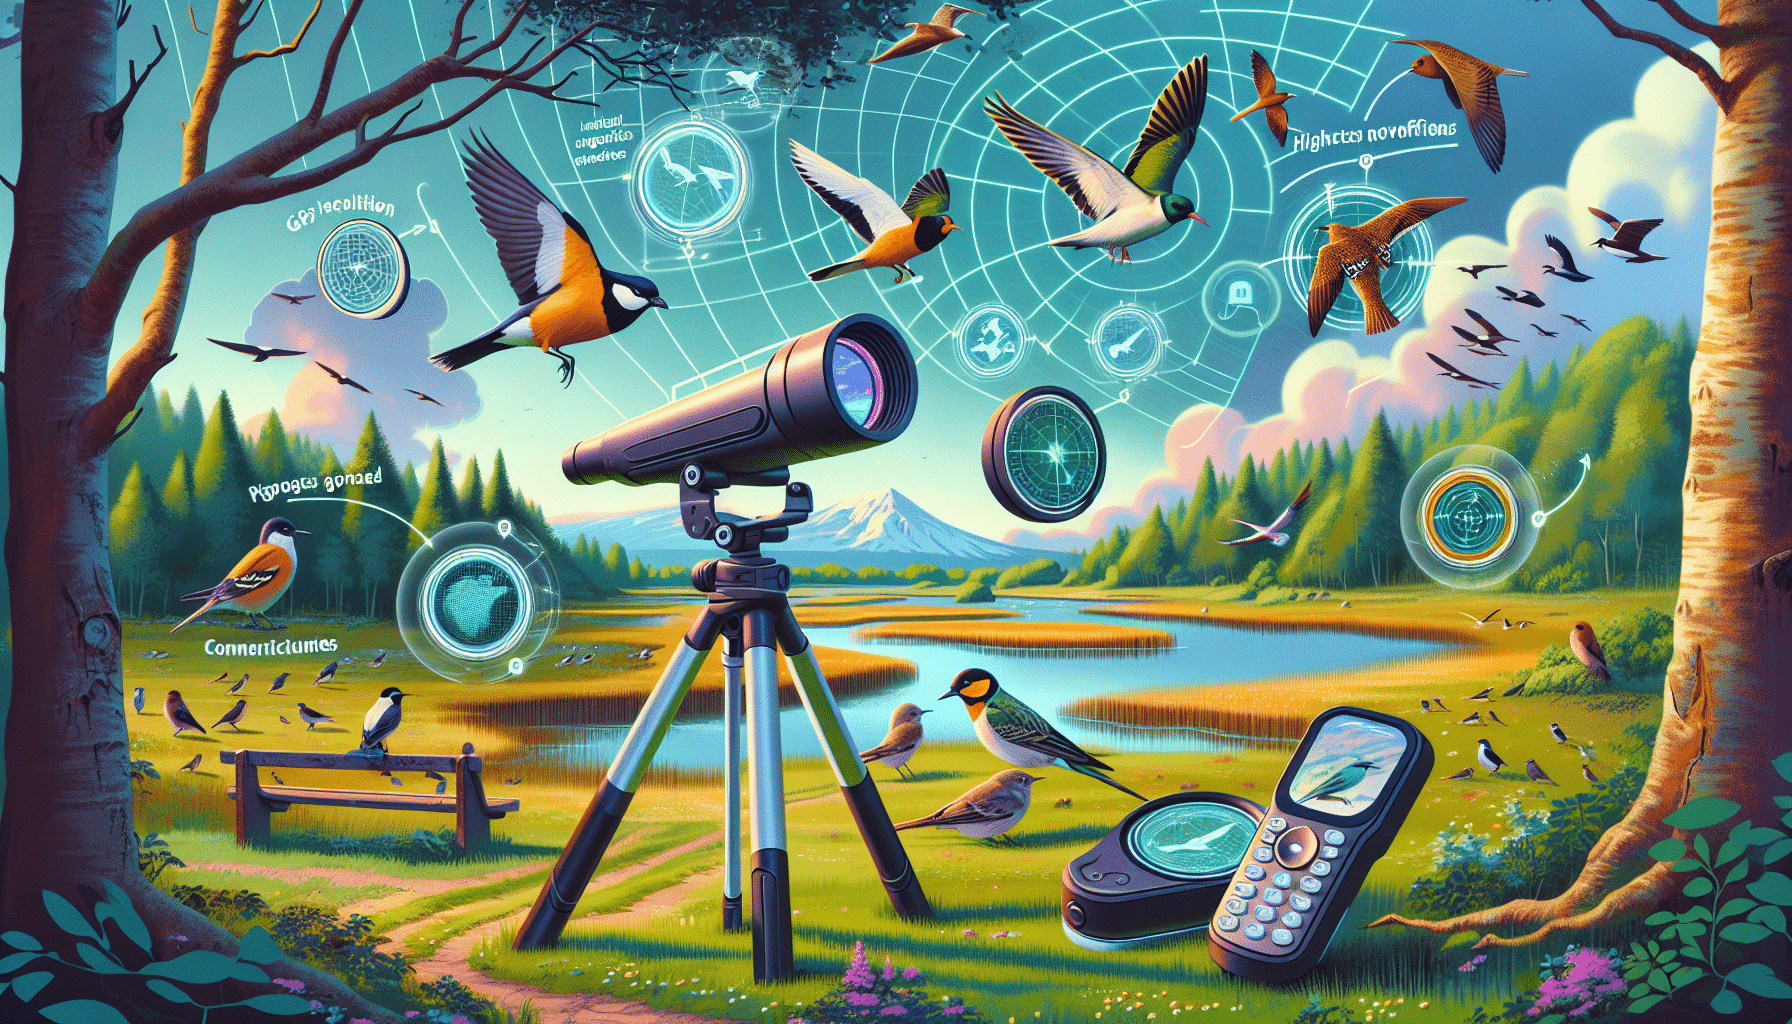 udforske, hvordan disse teknologiske innovationer kan revolutionere fuglekiggerioplevelsen og tage den til nye højder.